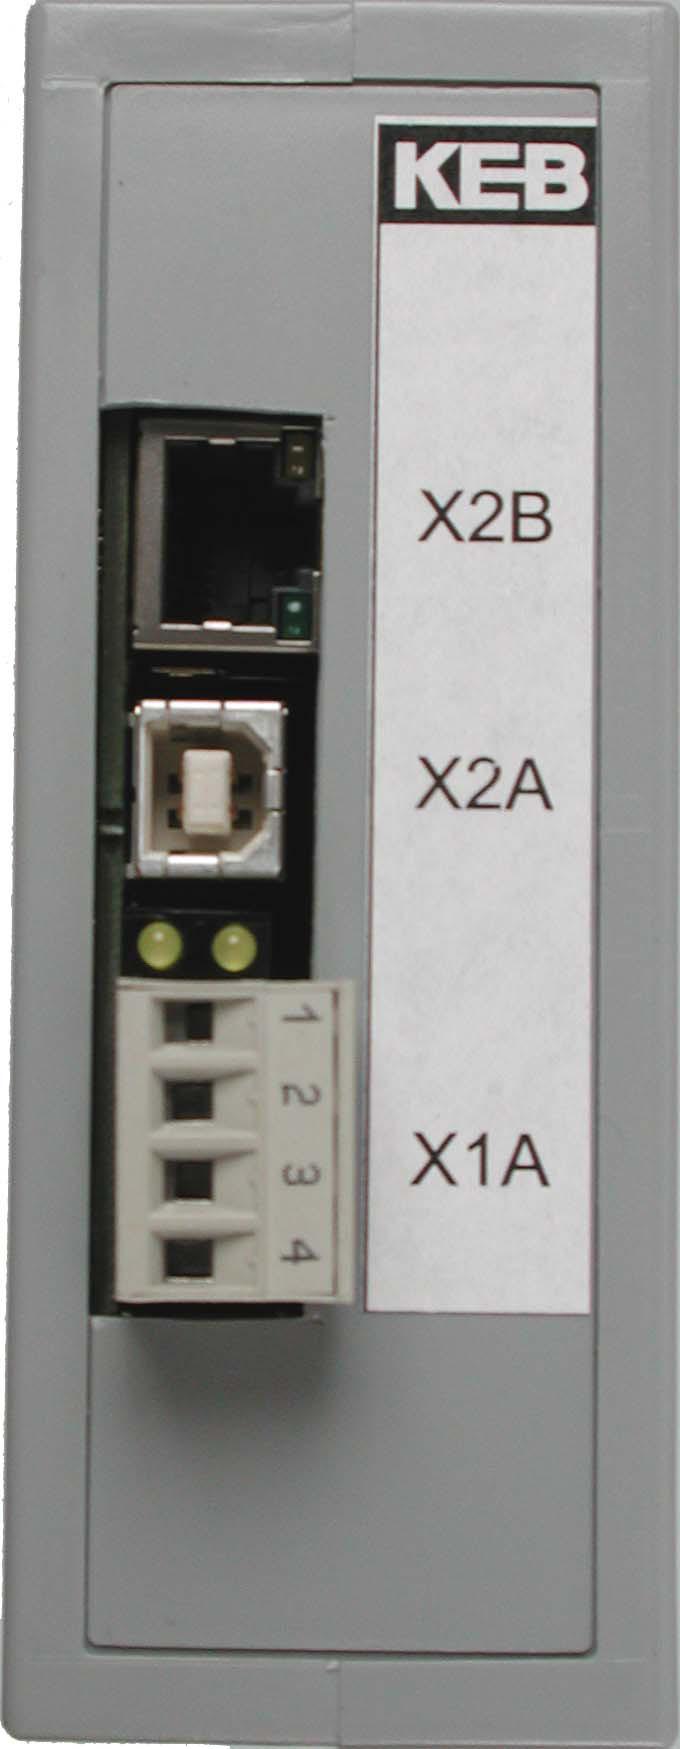 6.5 Lage der Stecker / Diagnoseanzeigen SPEED (gelb, oben in X2B) Ein: 100MBd Verbindung erkannt X2B Ethernet-Schnittstelle LINK/ACTIVE (grün, unten in X2B) Aus: Keine Verbindung Ein: Verbindung ist